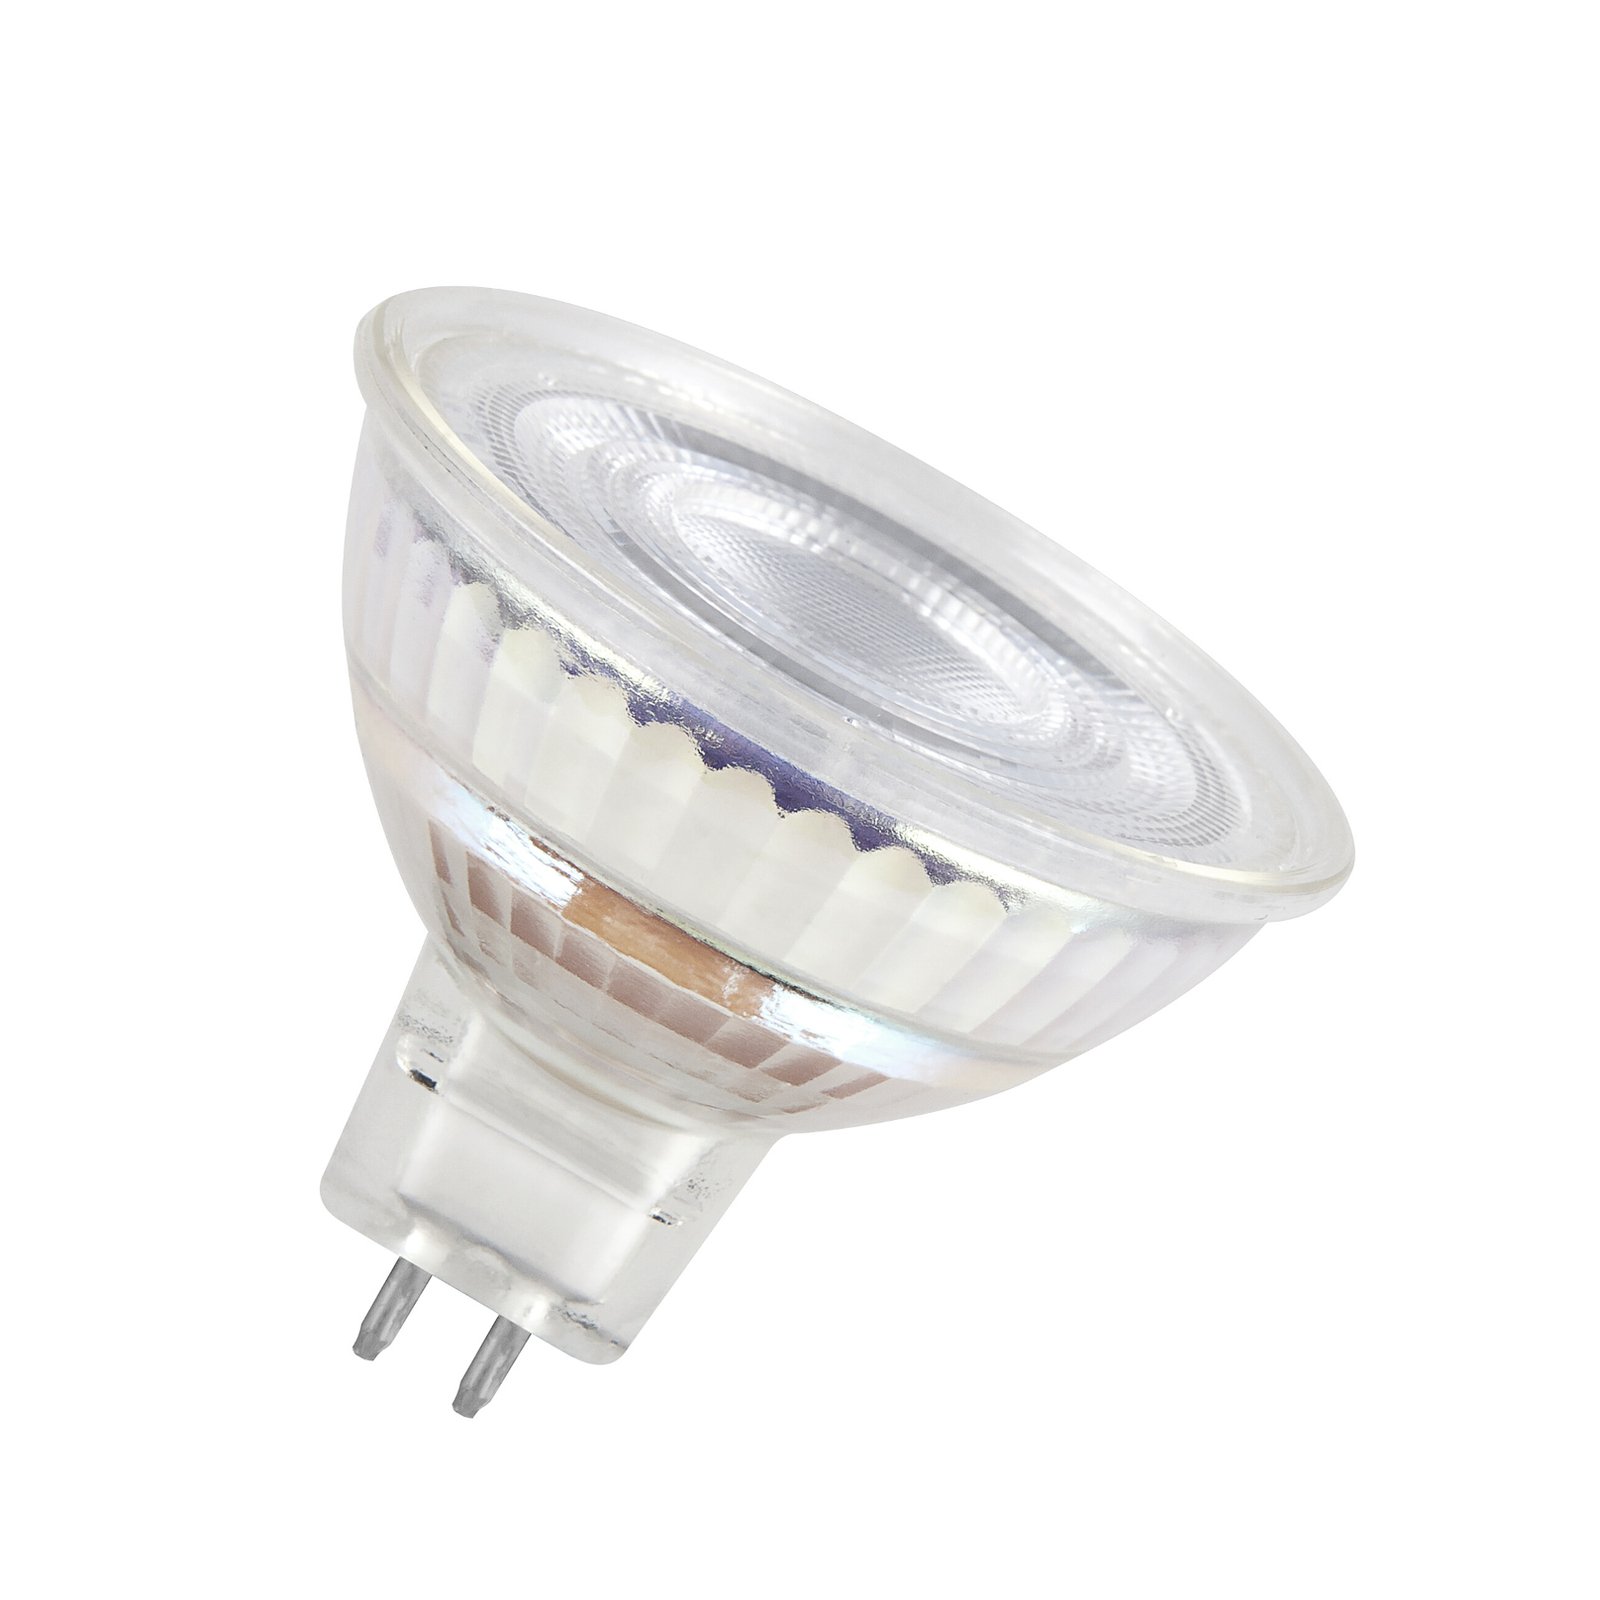 OSRAM LED bulb, GU5.3, 6.5 W, 12 V, 2,700 K, 120°